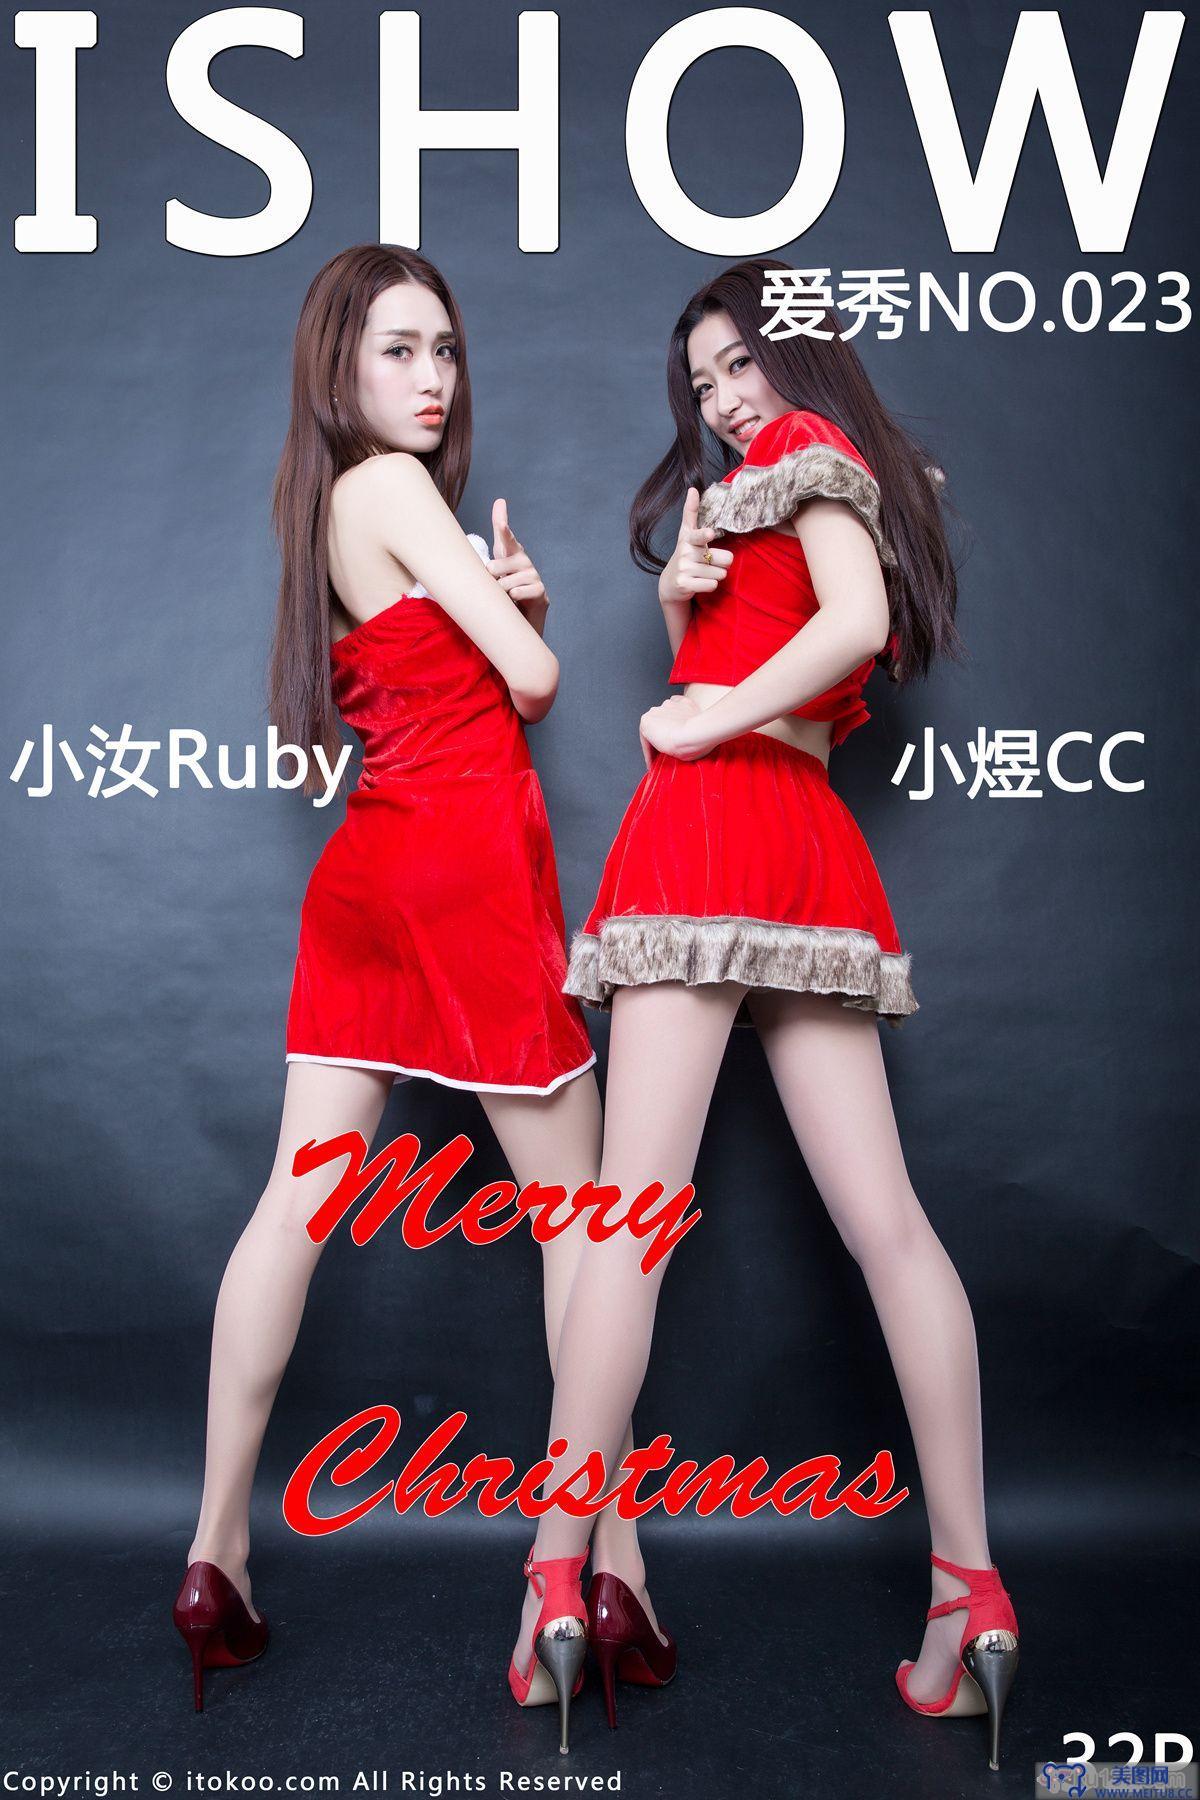 [ISHOW美女]2015-12-24 NO.023 小汝Ruby ＆ 小煜CC Merry Christmas